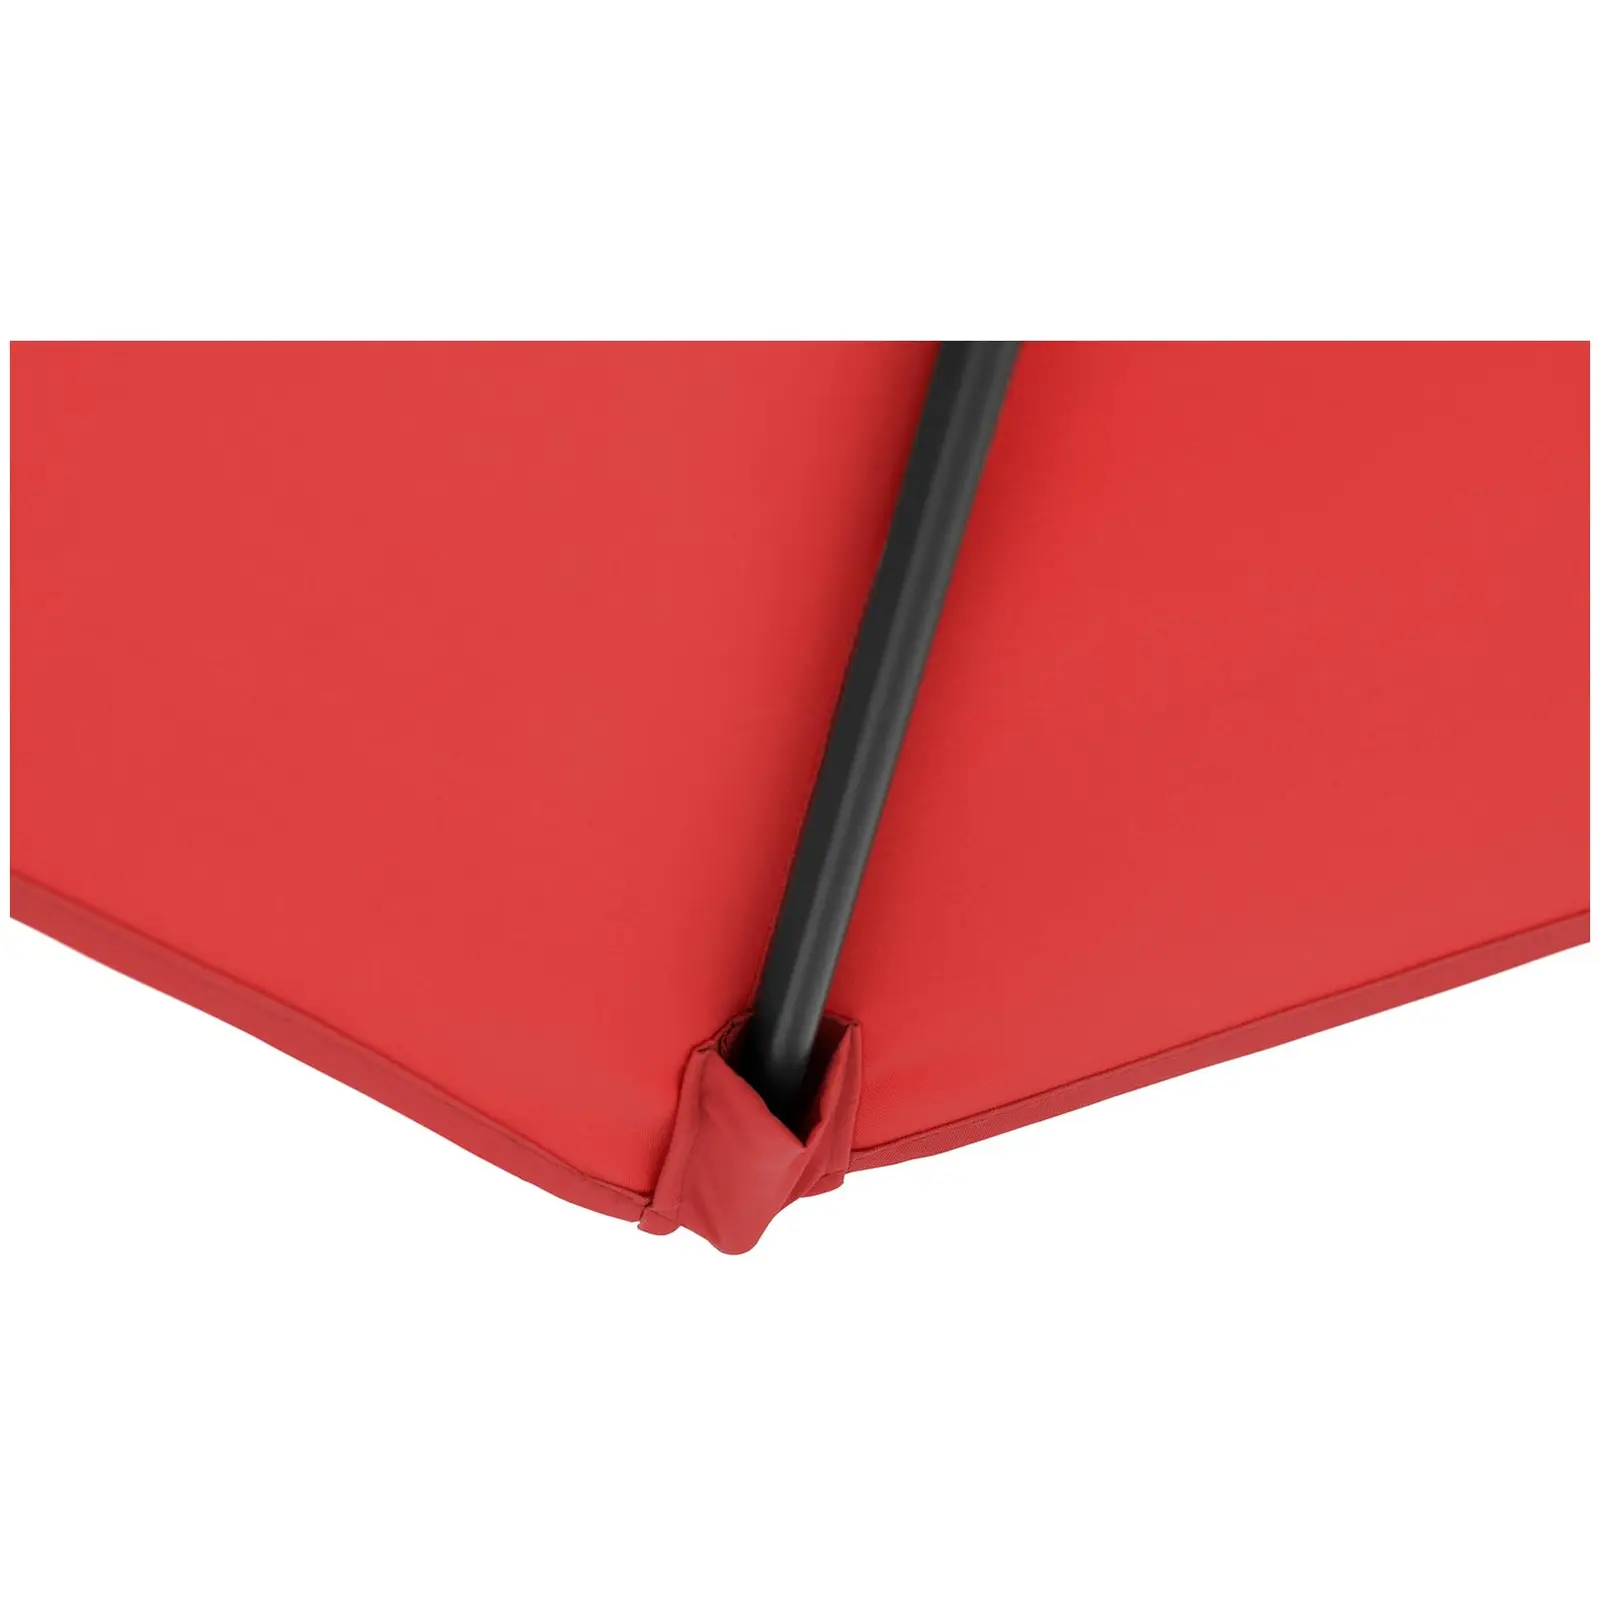 Ocasión Sombrilla colgante - color rojo - cuadrada - 250 x 250 cm - inclinable